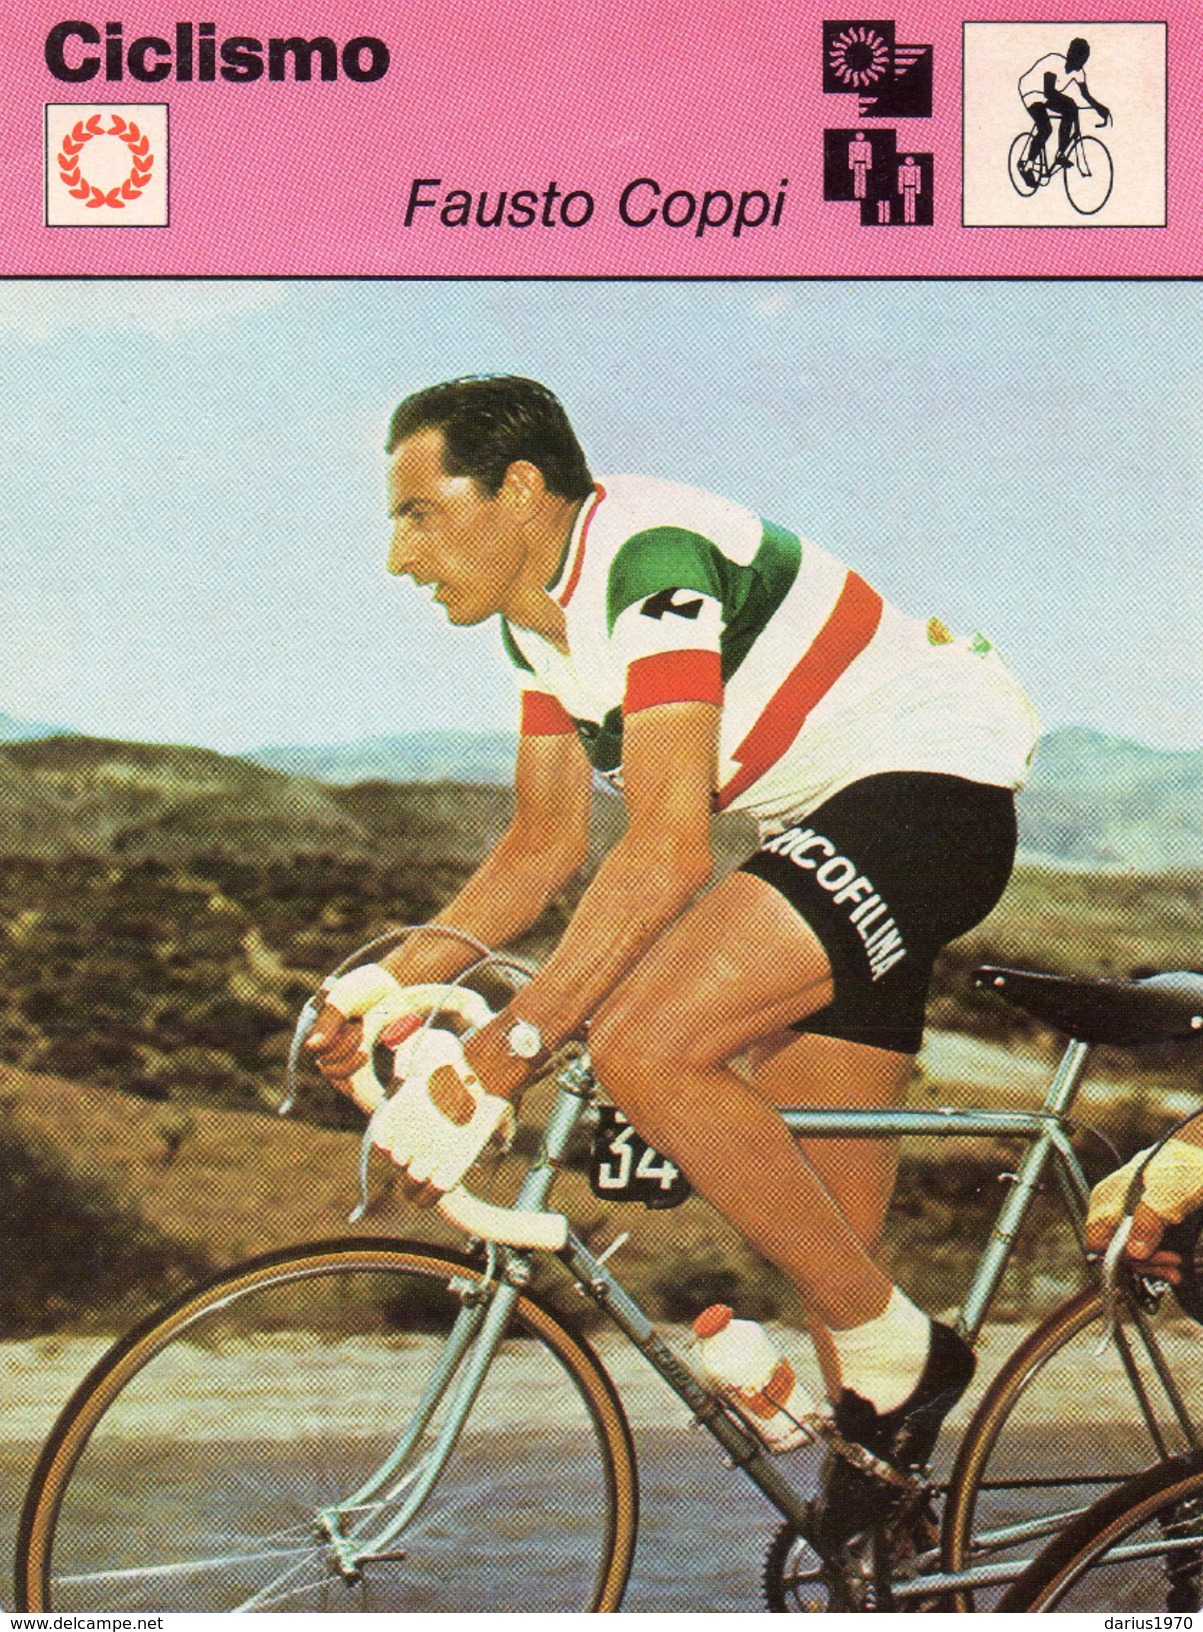 Fausto Coppi - Scheda Tecnica A Colori Del 1977 Edita Dalla Rizzoli - Ciclismo